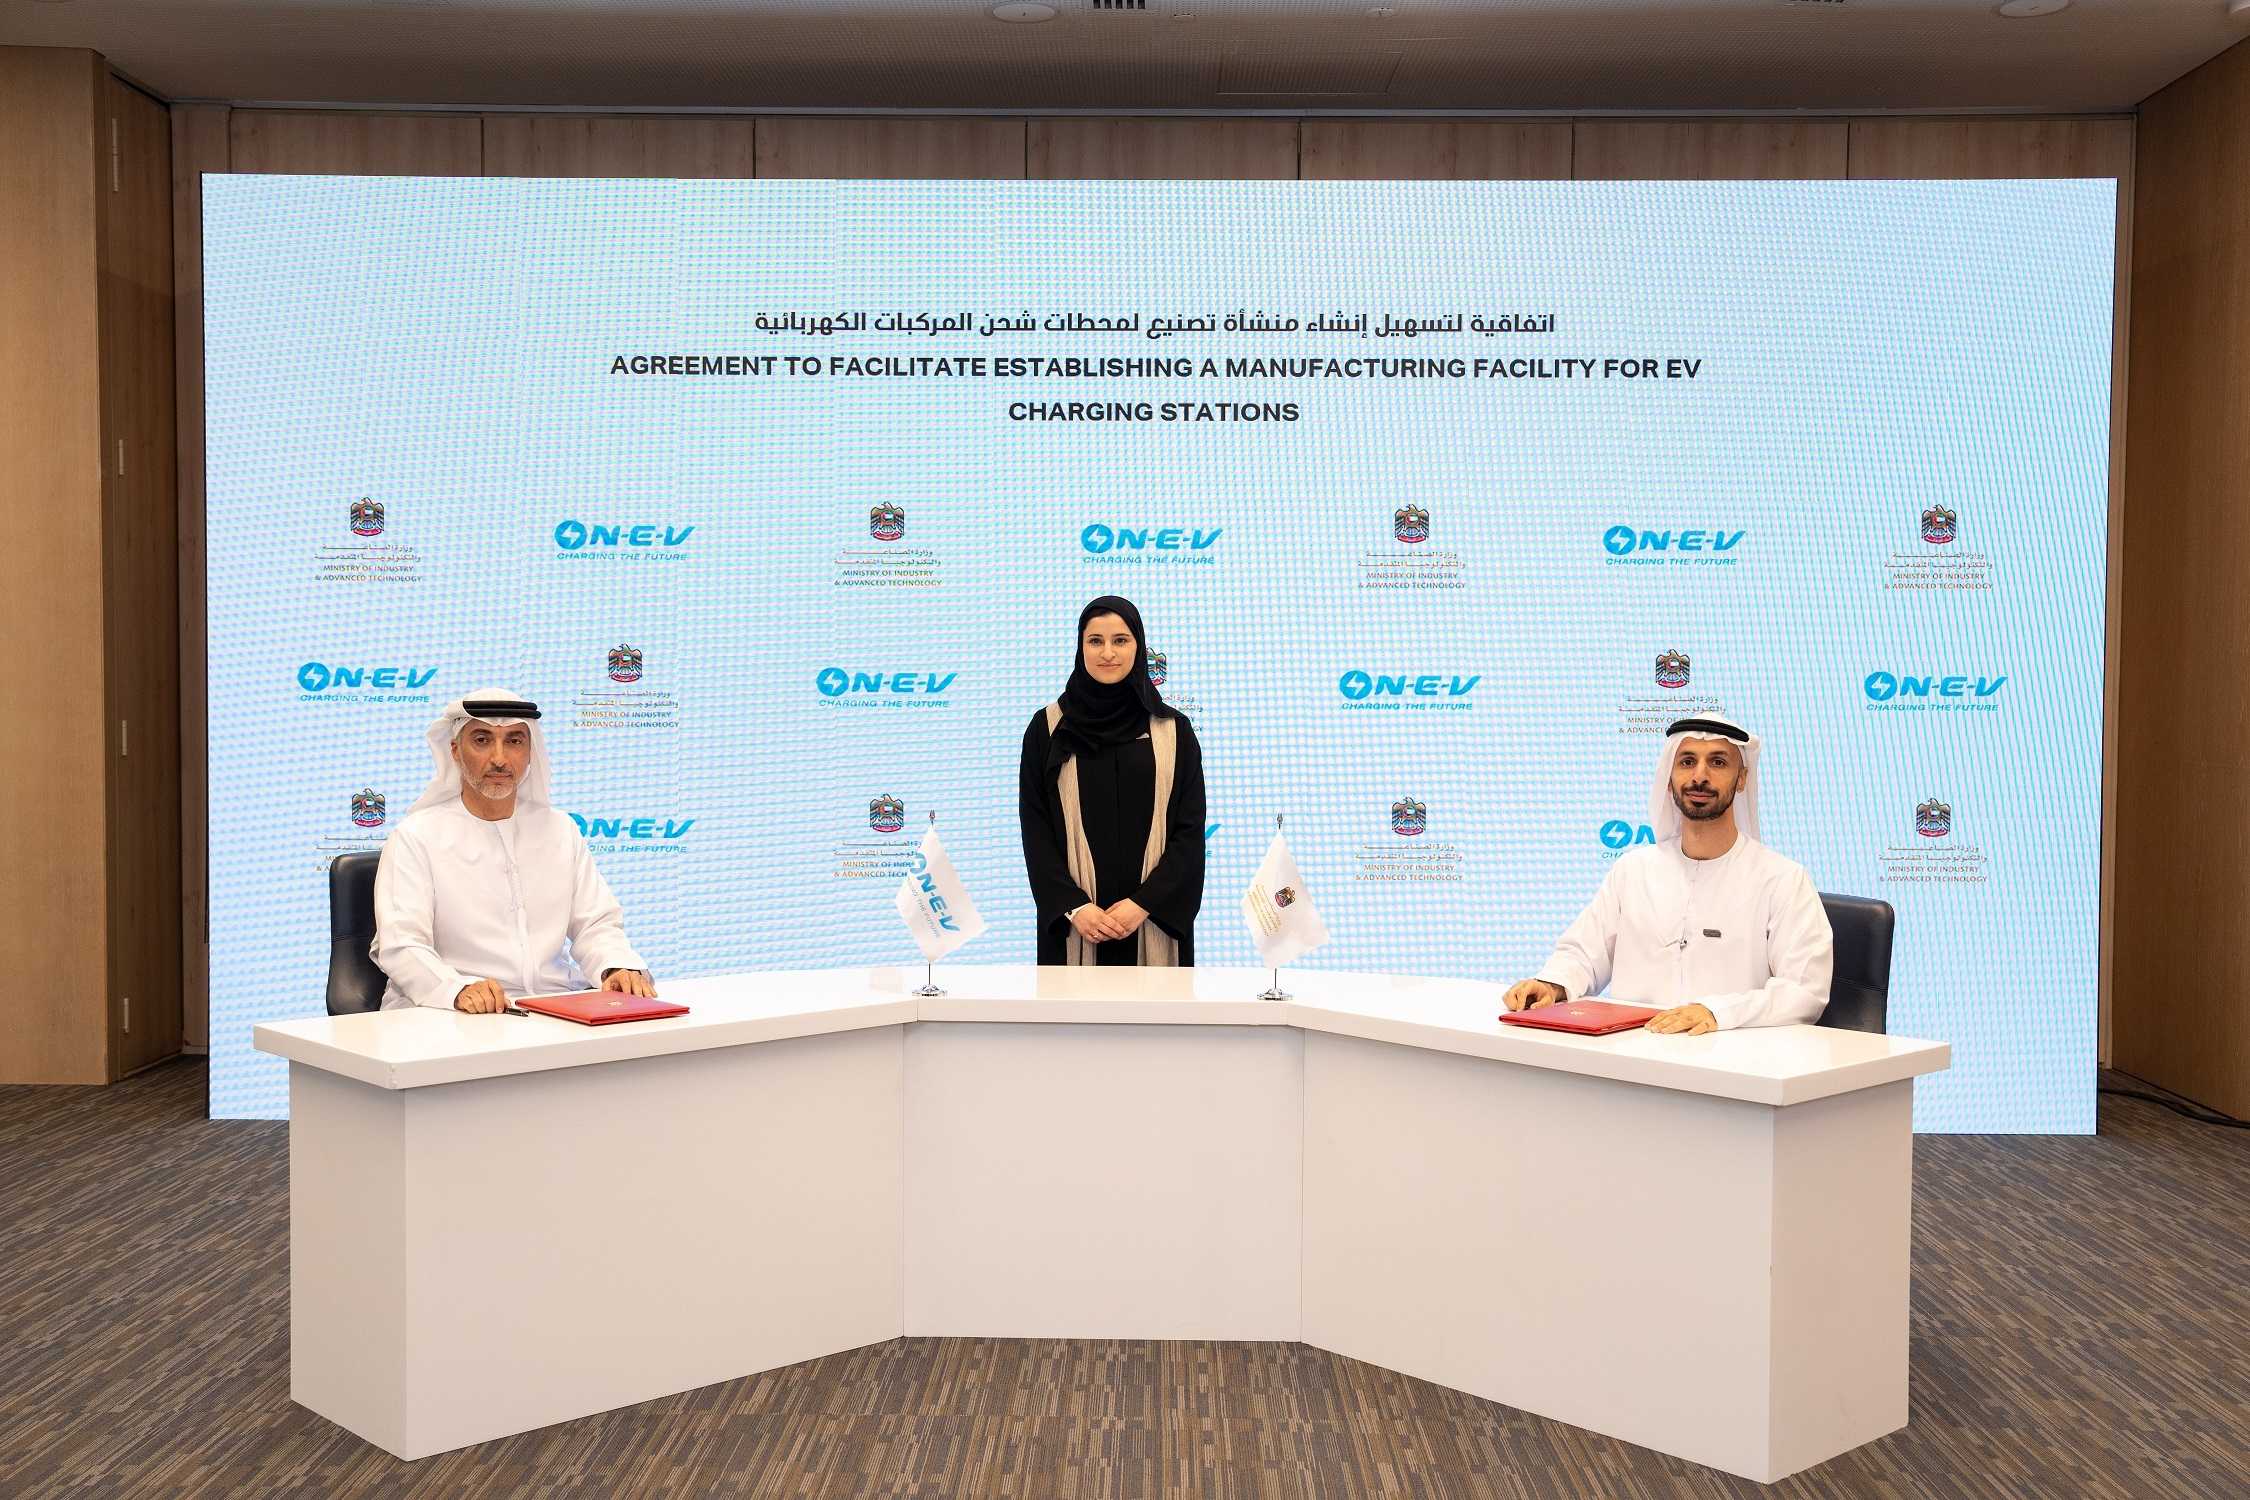  الصناعة والتكنولوجيا المتقدمة  وشركة  شاحن  يوقعان شراكة استراتيجية لتعزيز التحول نحو التنقل الأخضر في الإمارات
